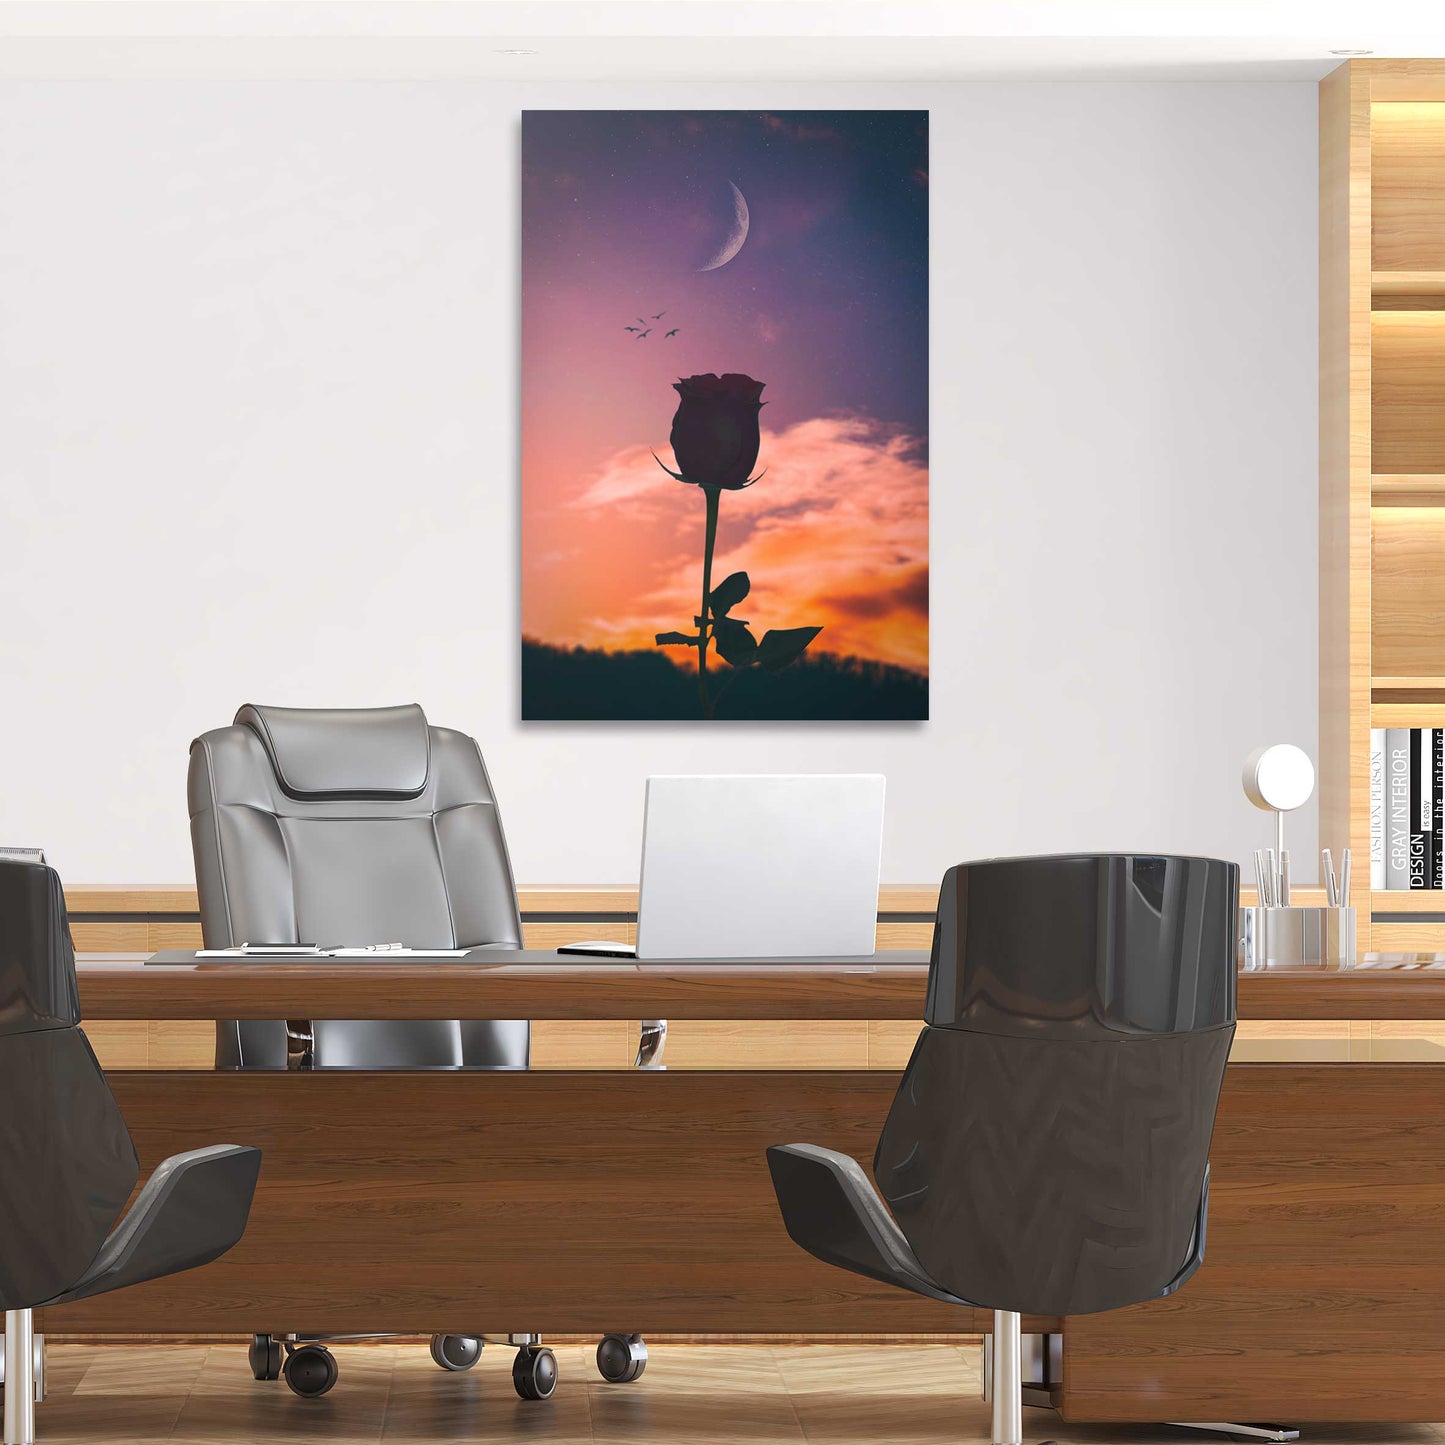 Moon Backgrounds Wall Art | Inspirational Wall Art Motivational Wall Art Quotes Office Art | ImpaktMaker Exclusive Canvas Art Portrait